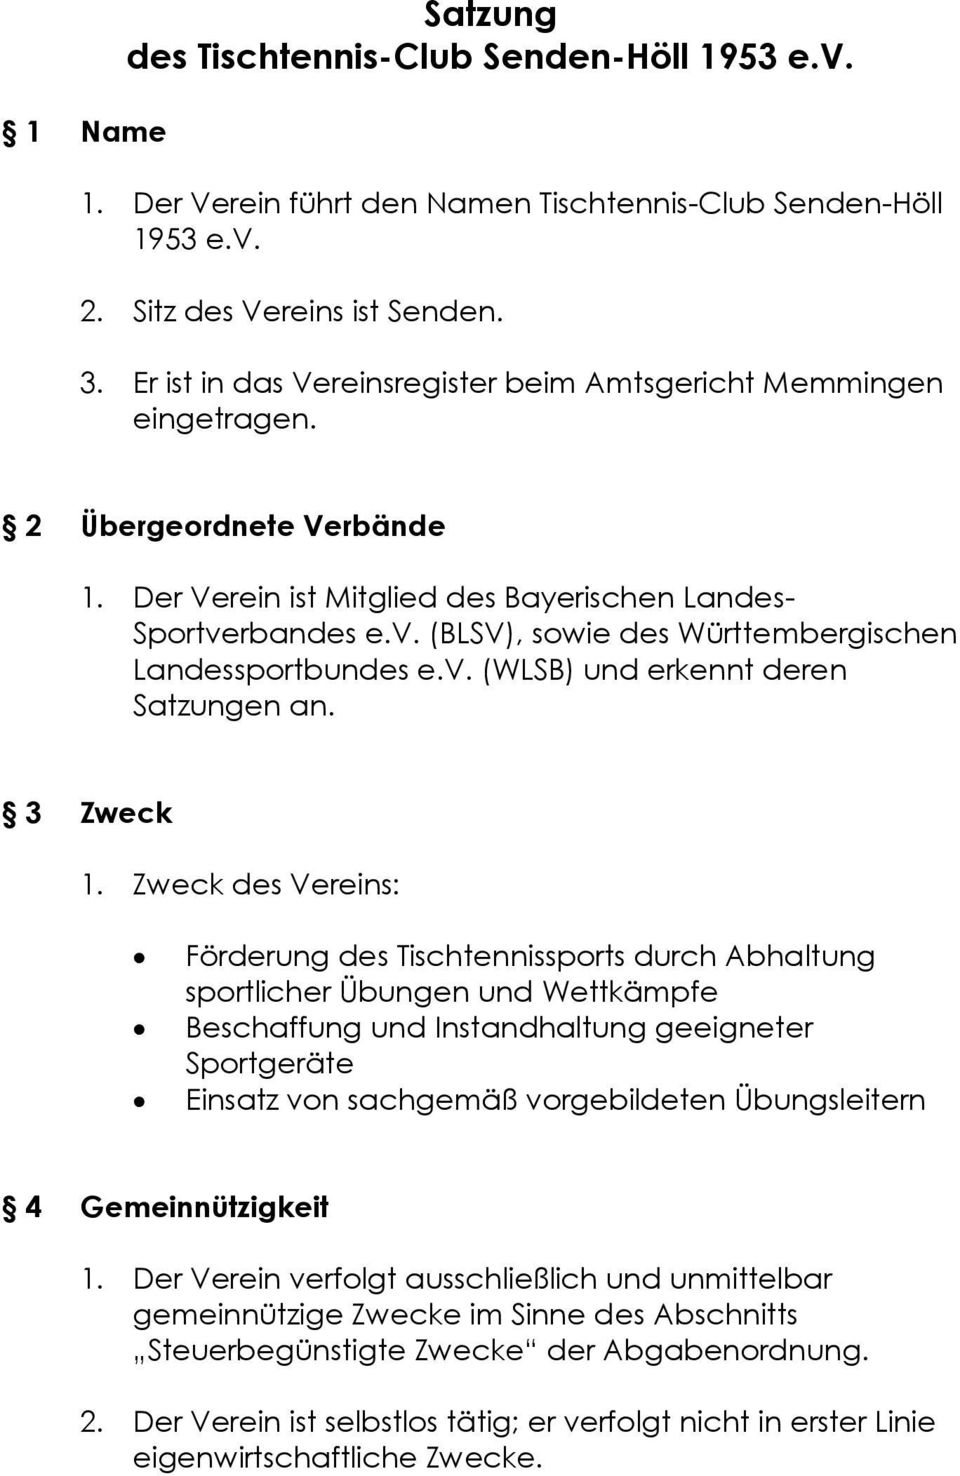 rbandes e.v. (BLSV), sowie des Württembergischen Landessportbundes e.v. (WLSB) und erkennt deren Satzungen an. 3 Zweck 1.